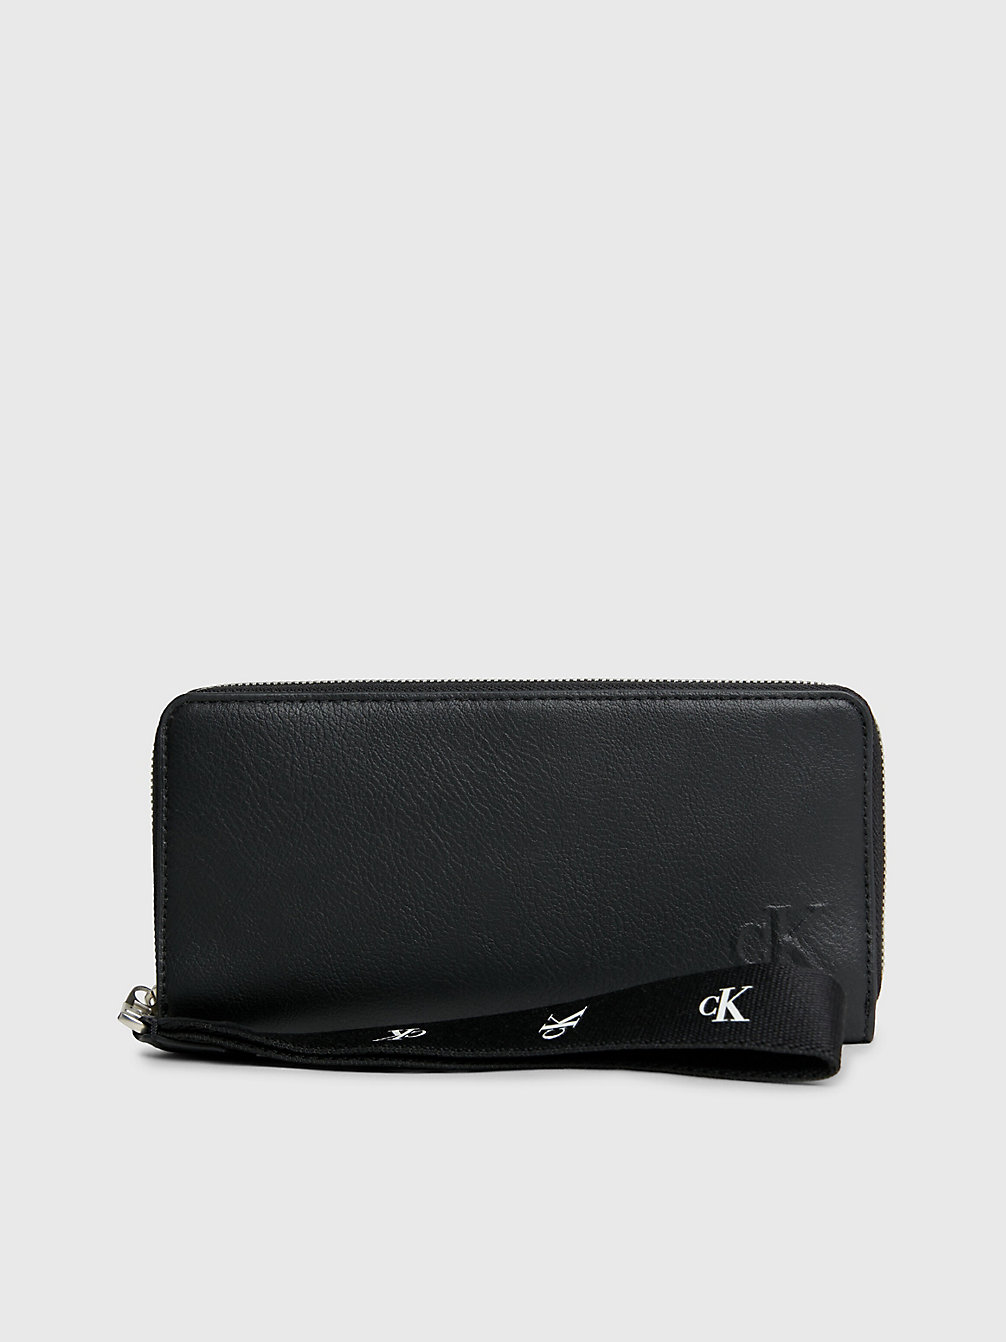 BLACK > Armbandtaschen-Portemonnaie Mit Rundum-Reißverschluss Aus Recyceltem Material > undefined Damen - Calvin Klein